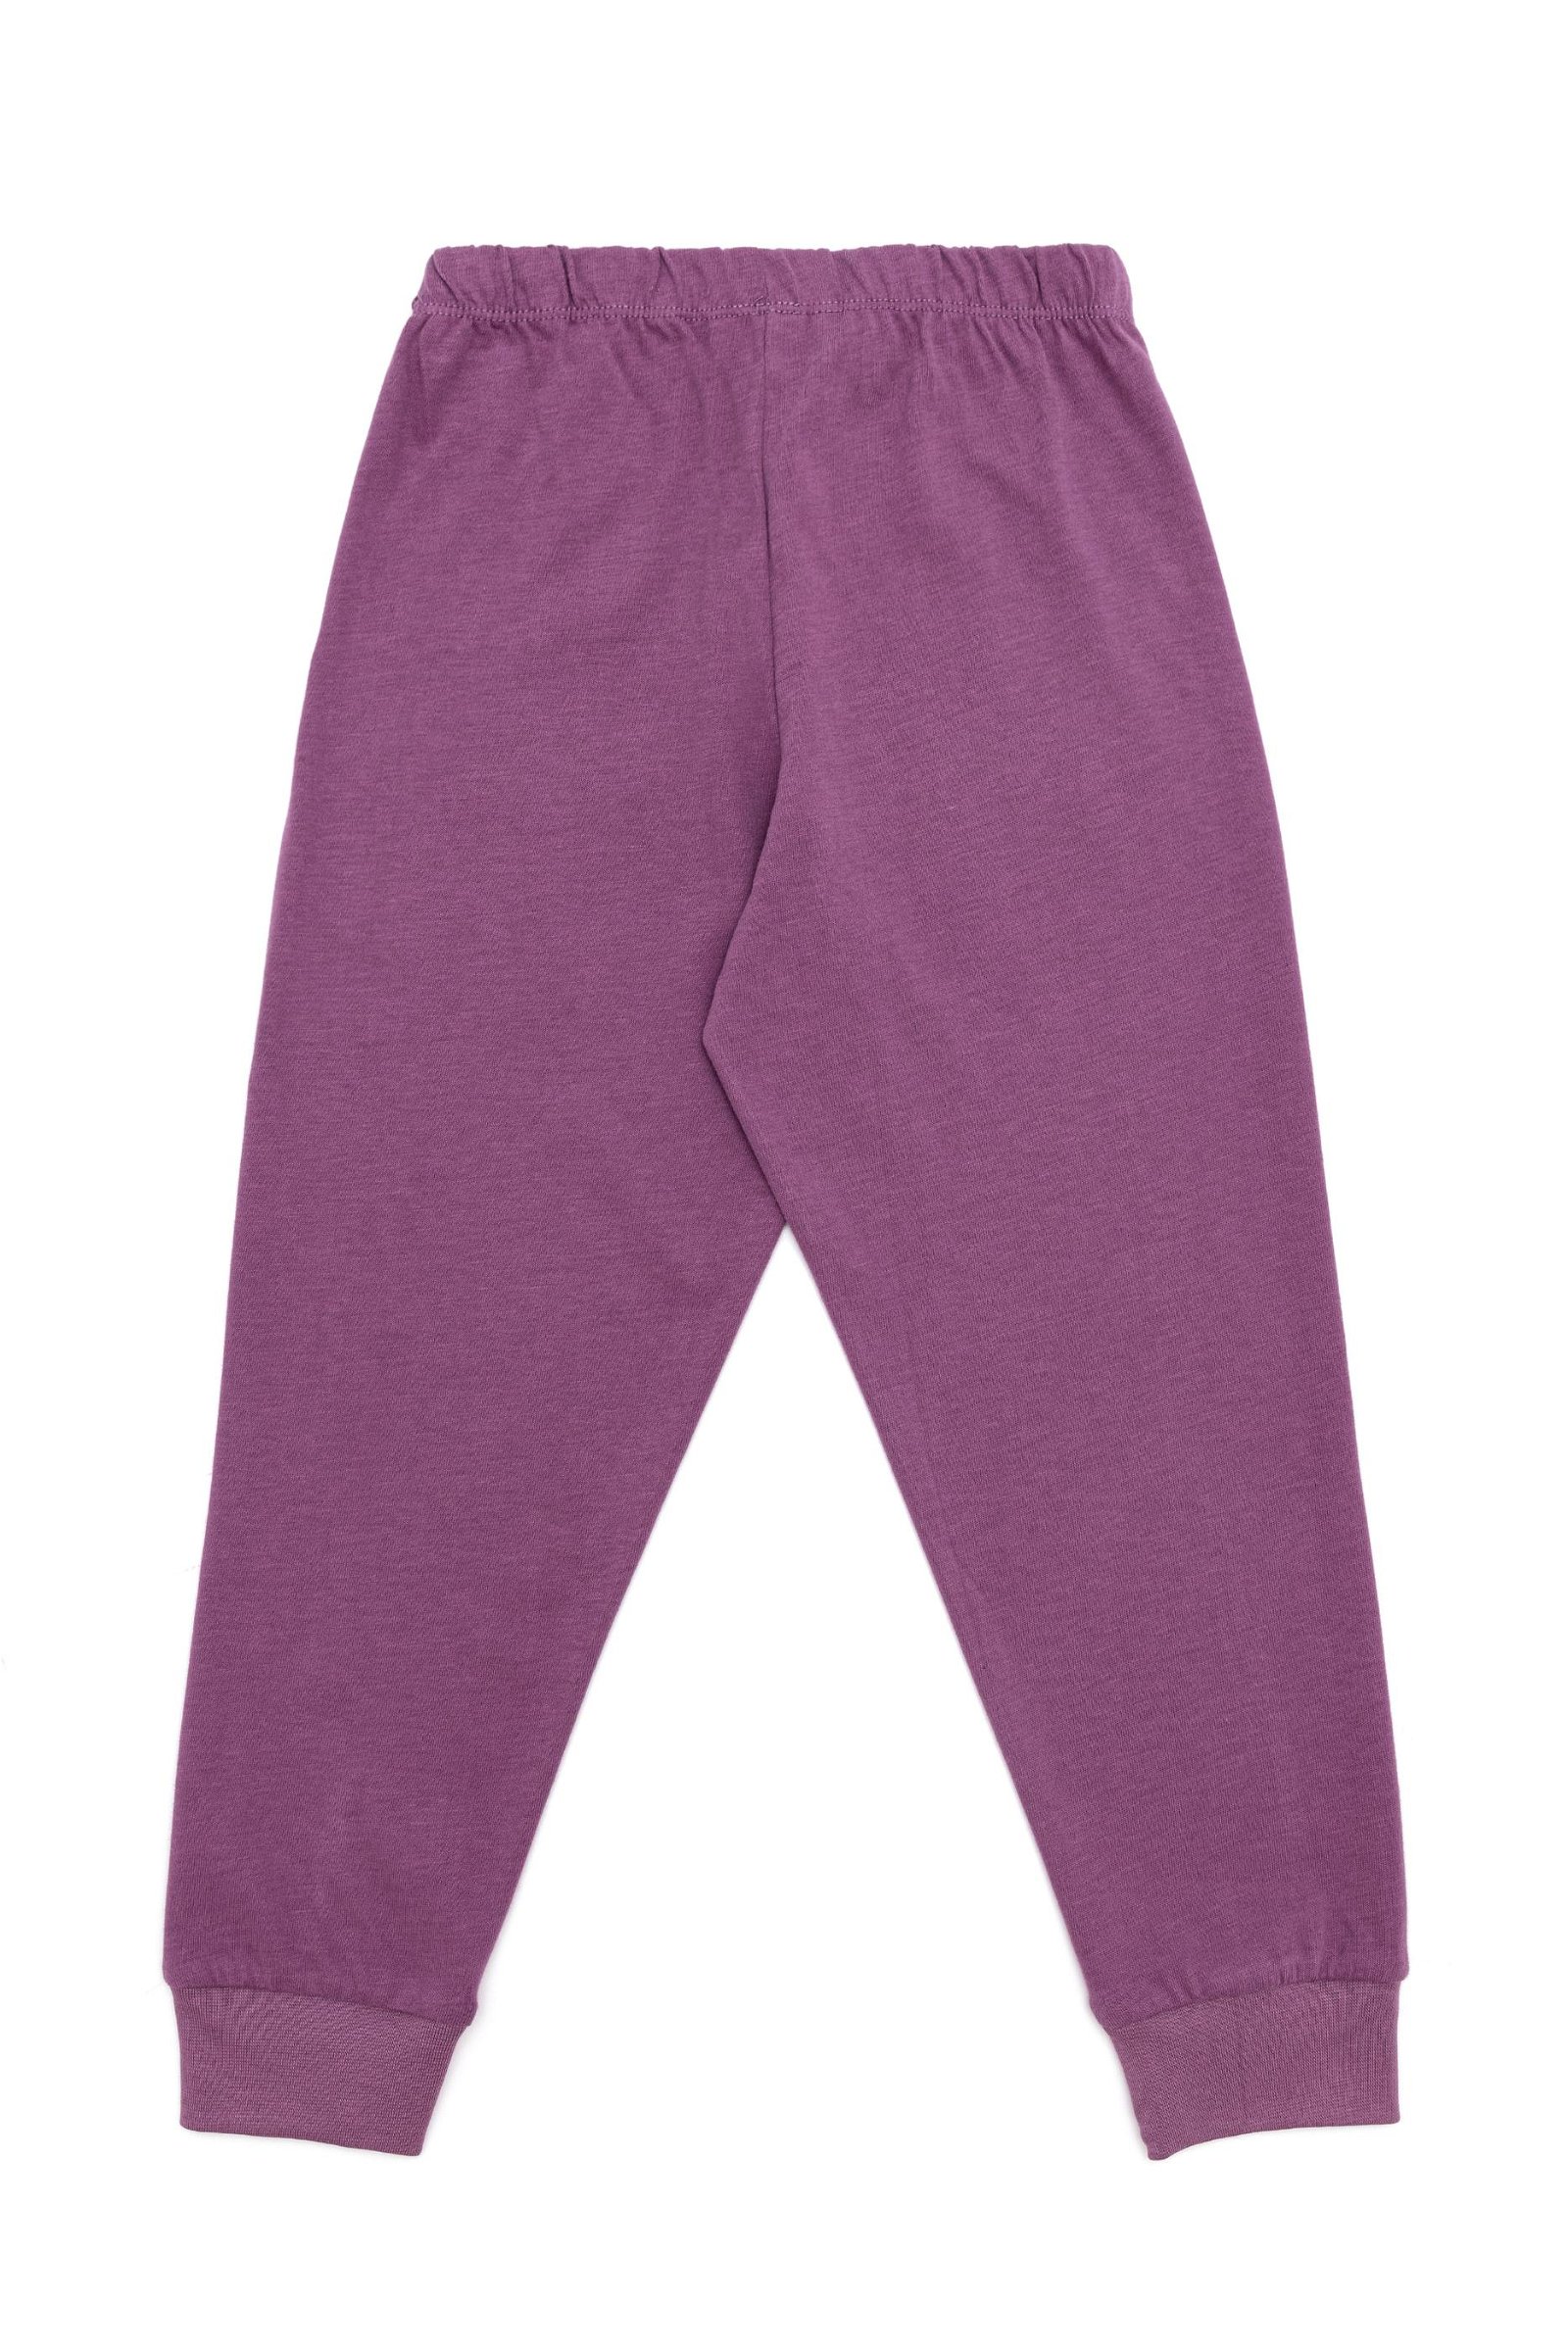 Kız Çocuk Açık Pembe Pijama Takımı